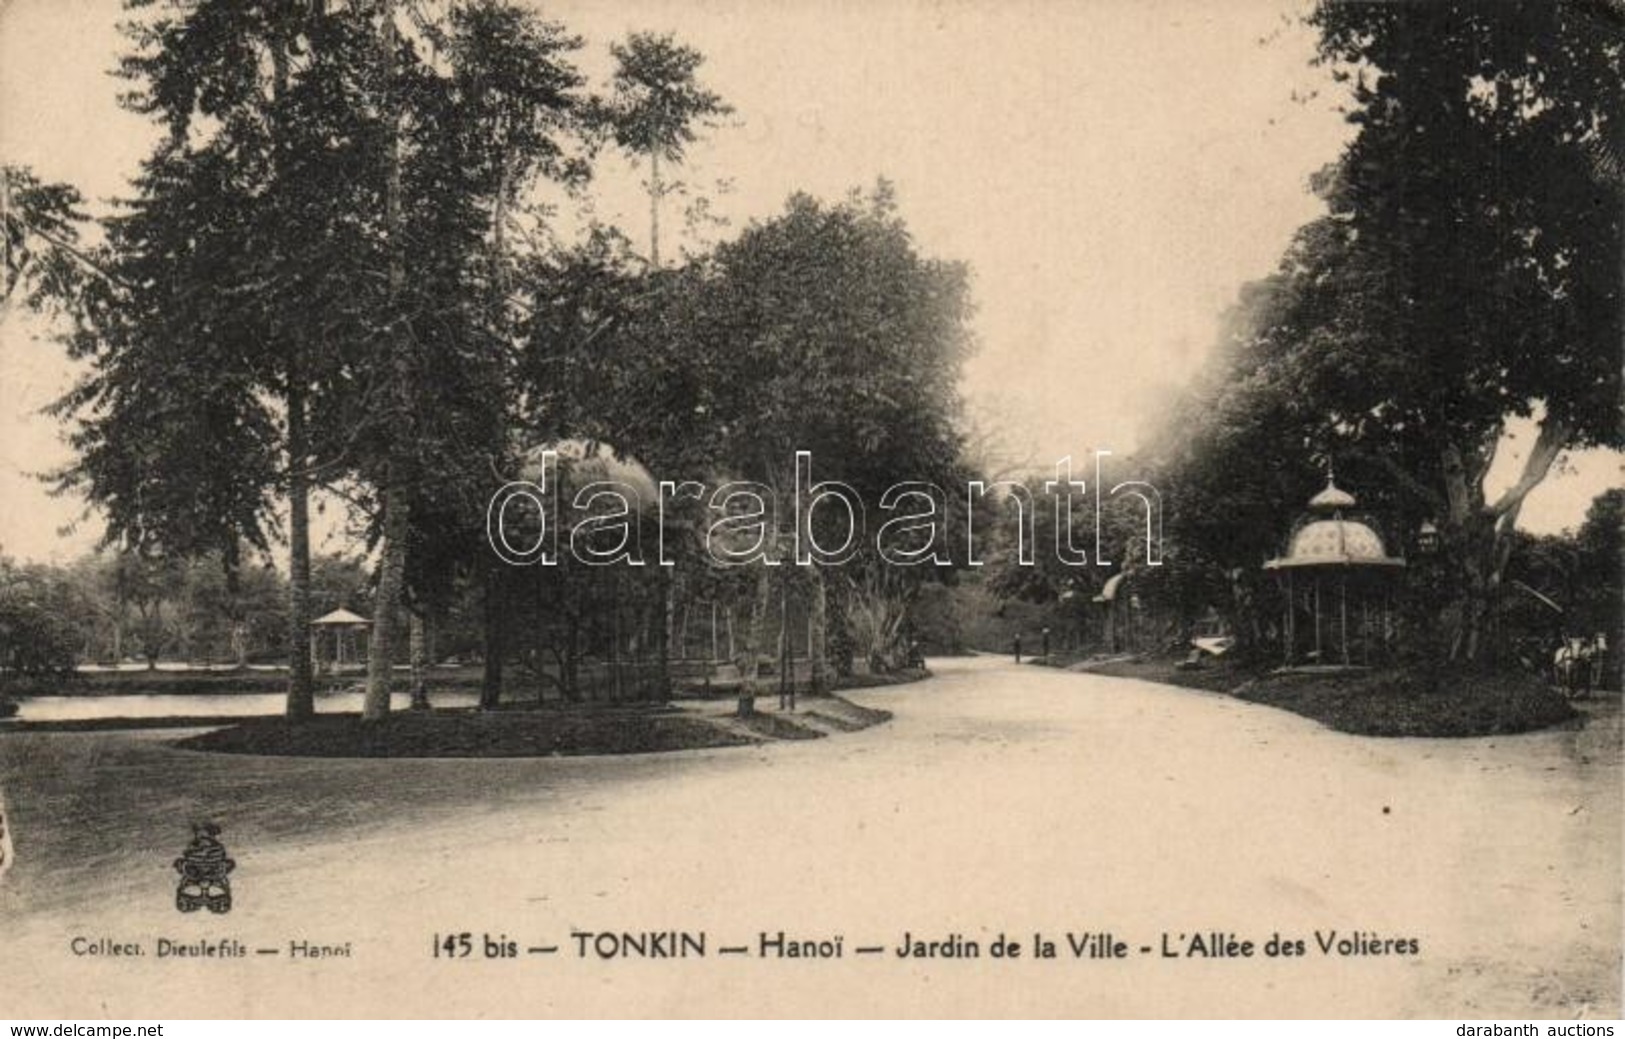 ** T2/T3 Tonkin, Hanoi; Jardin De La Ville, L'Allée Des Voileres / Garden, Alley - Non Classés